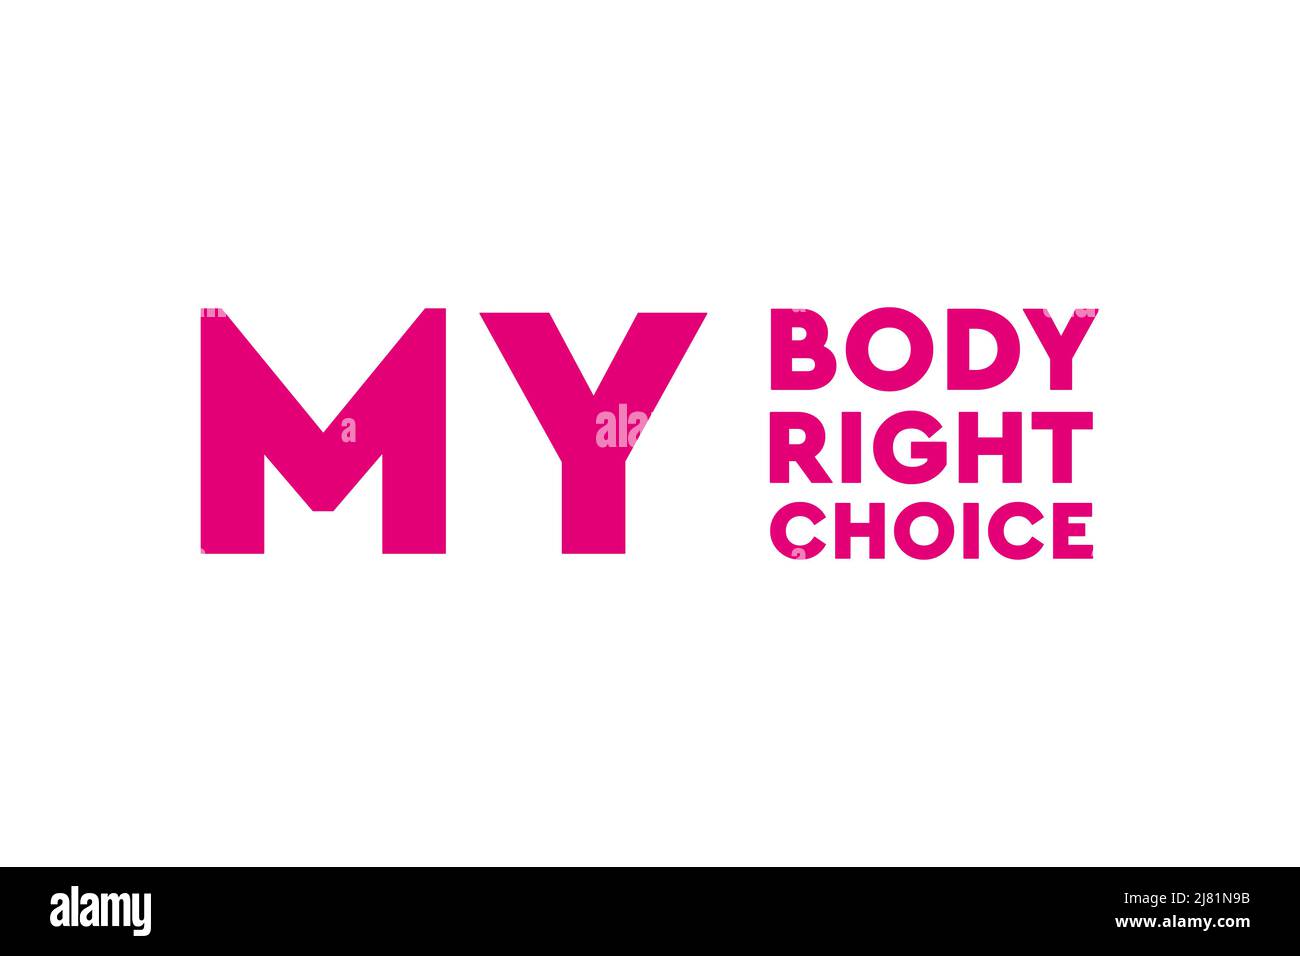 Mantenga legal el aborto. Mi cuerpo, mi derecho, mi elección. Póster, banner o fondo de Pro abortion Foto de stock